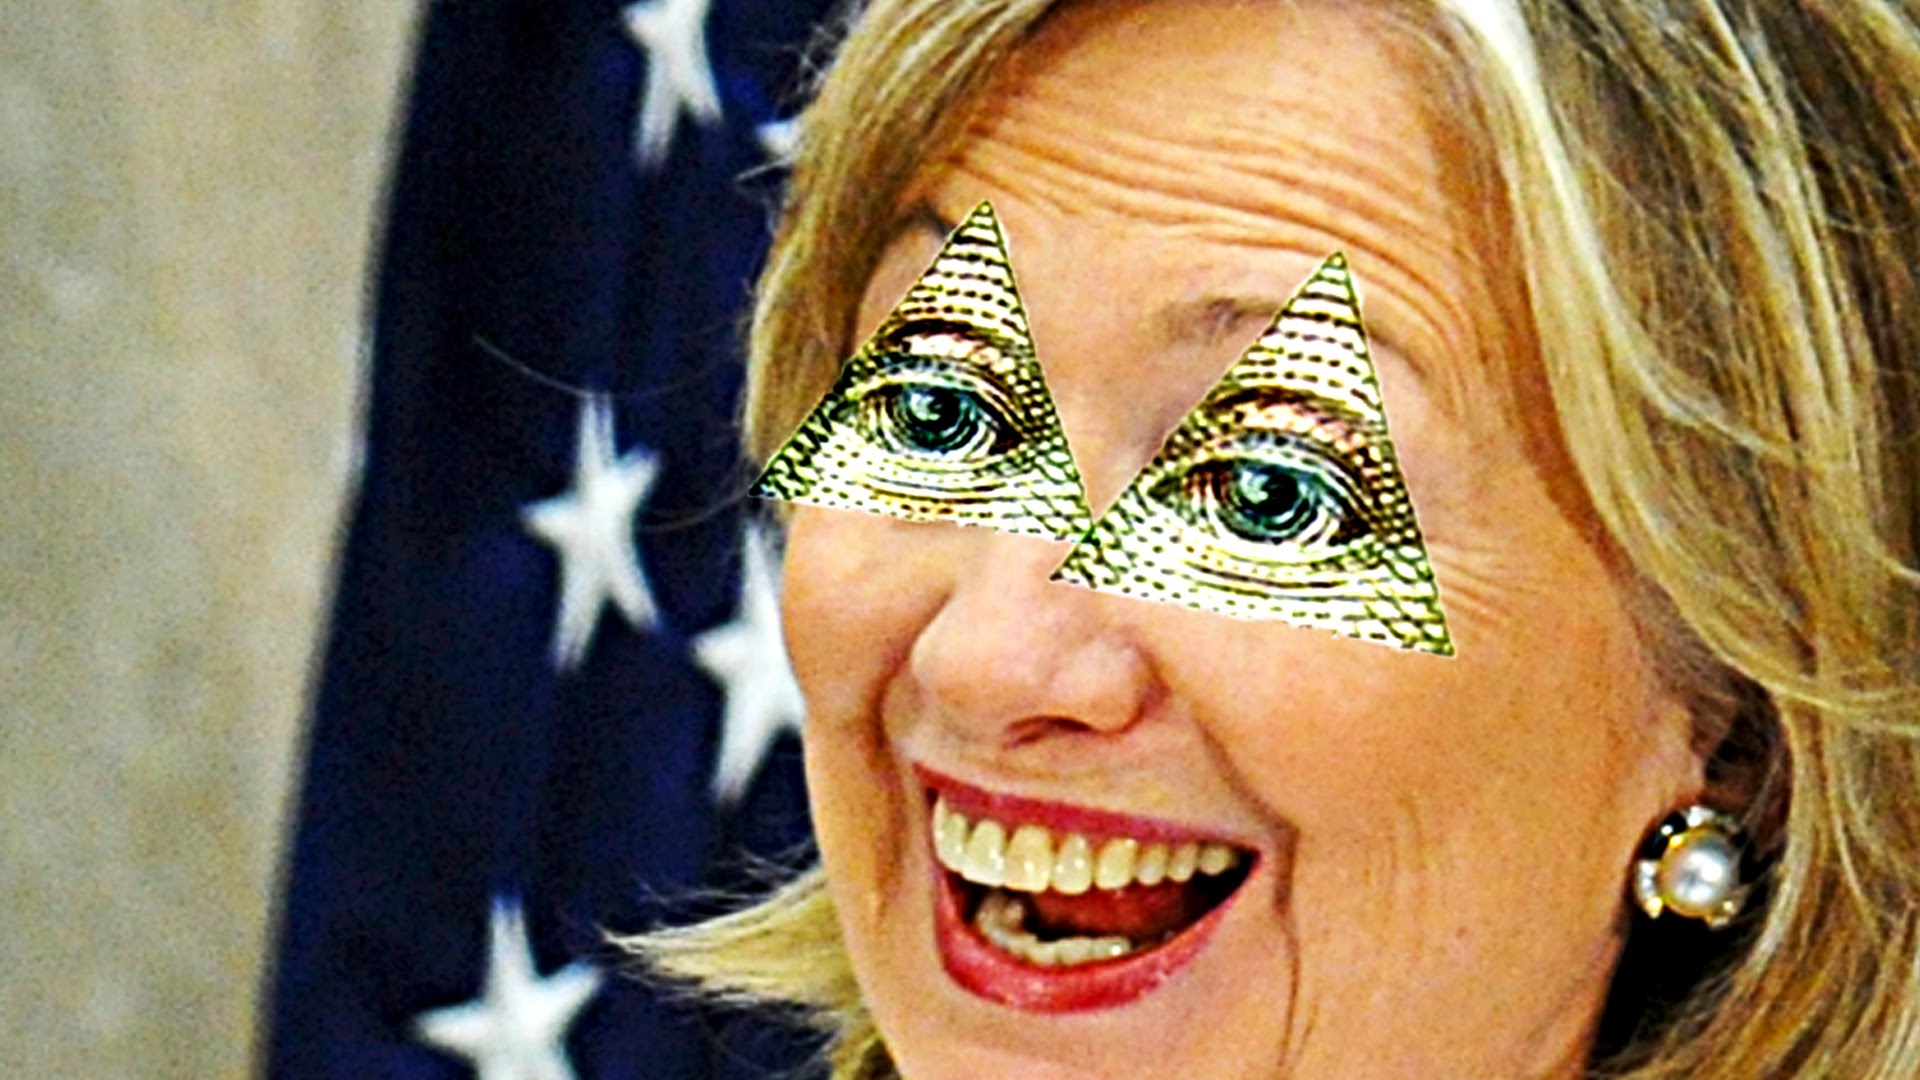 Hillary Clinton is Illuminati